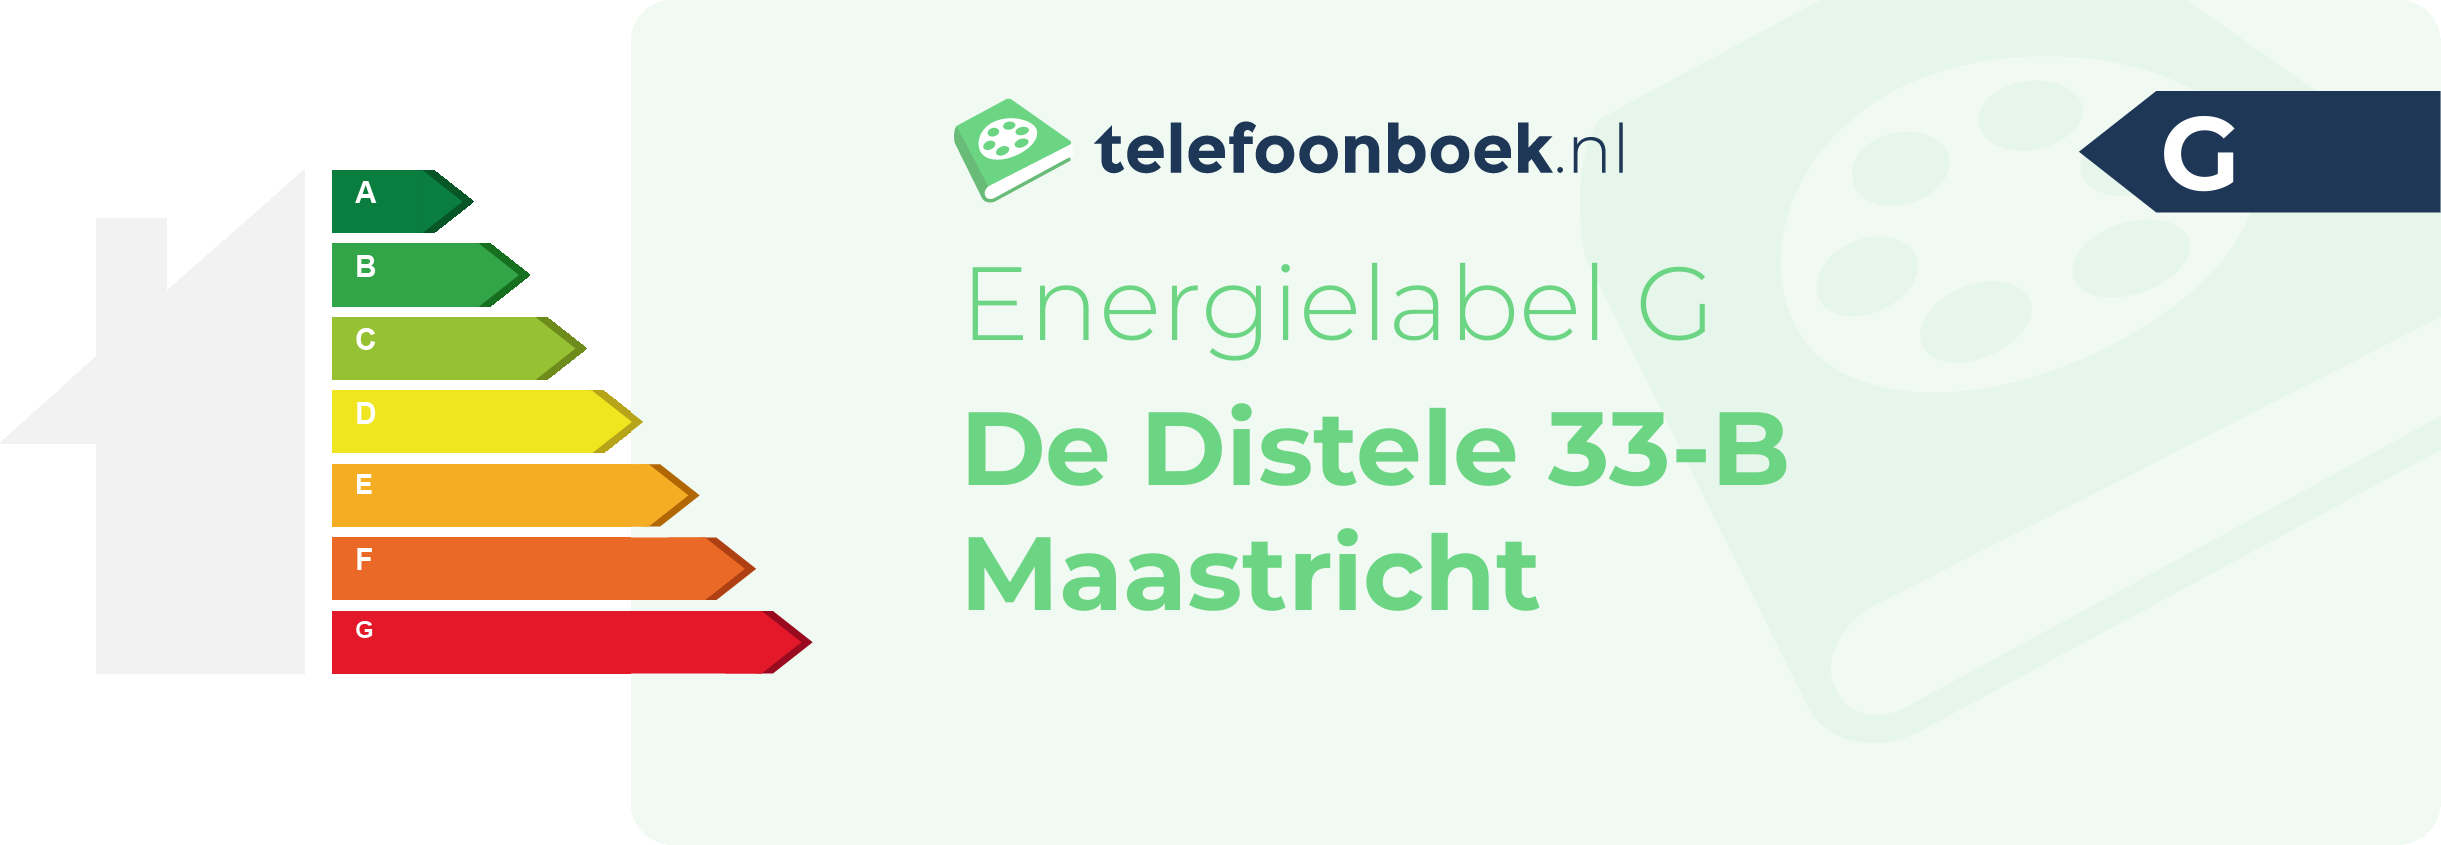 Energielabel De Distele 33-B Maastricht